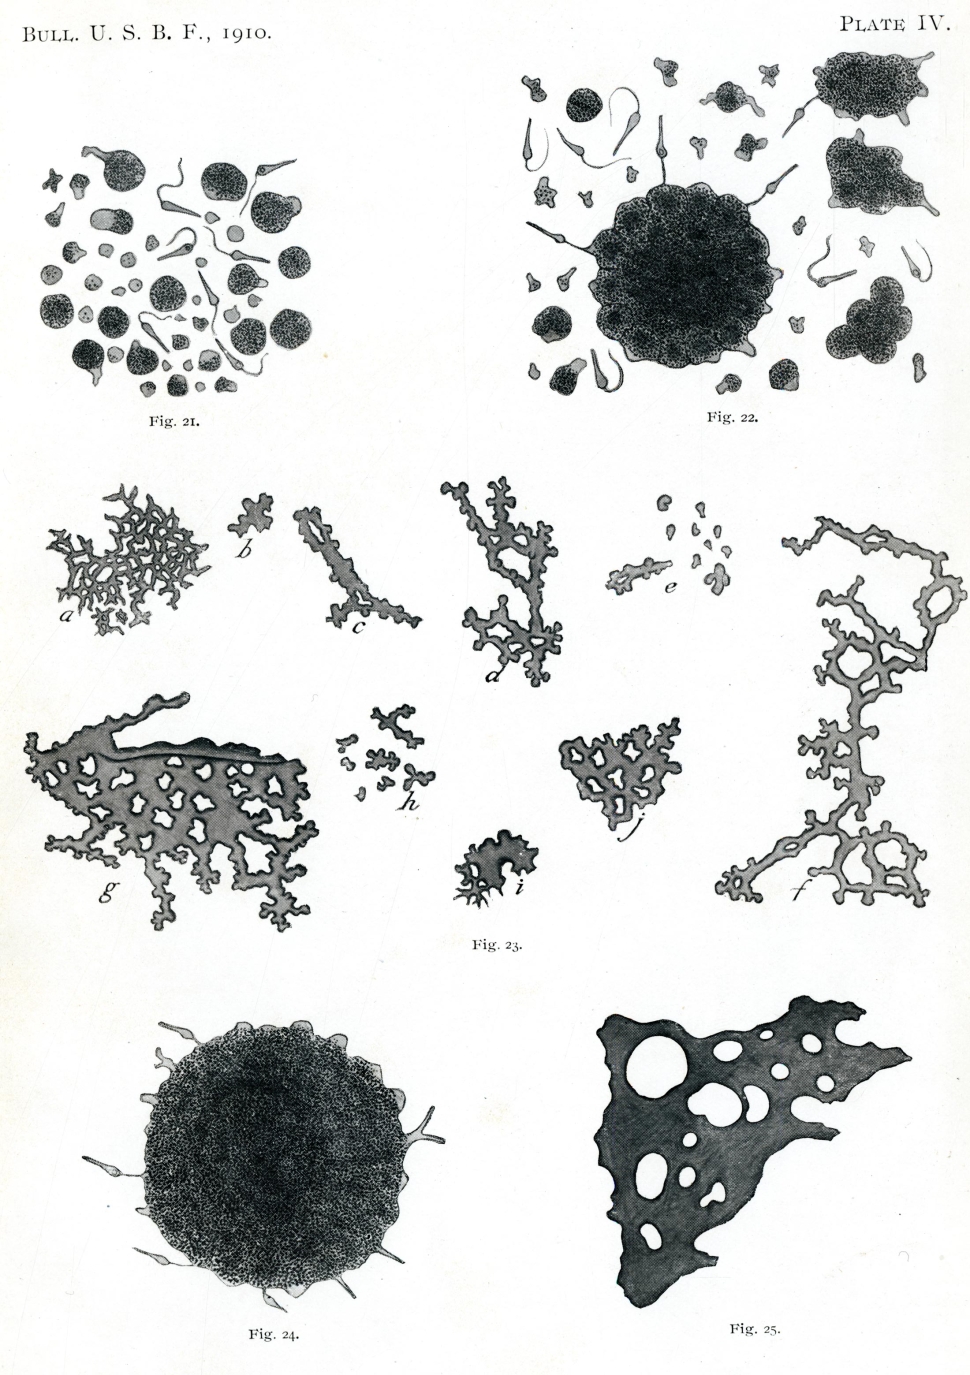 Diagram of various types of sponge